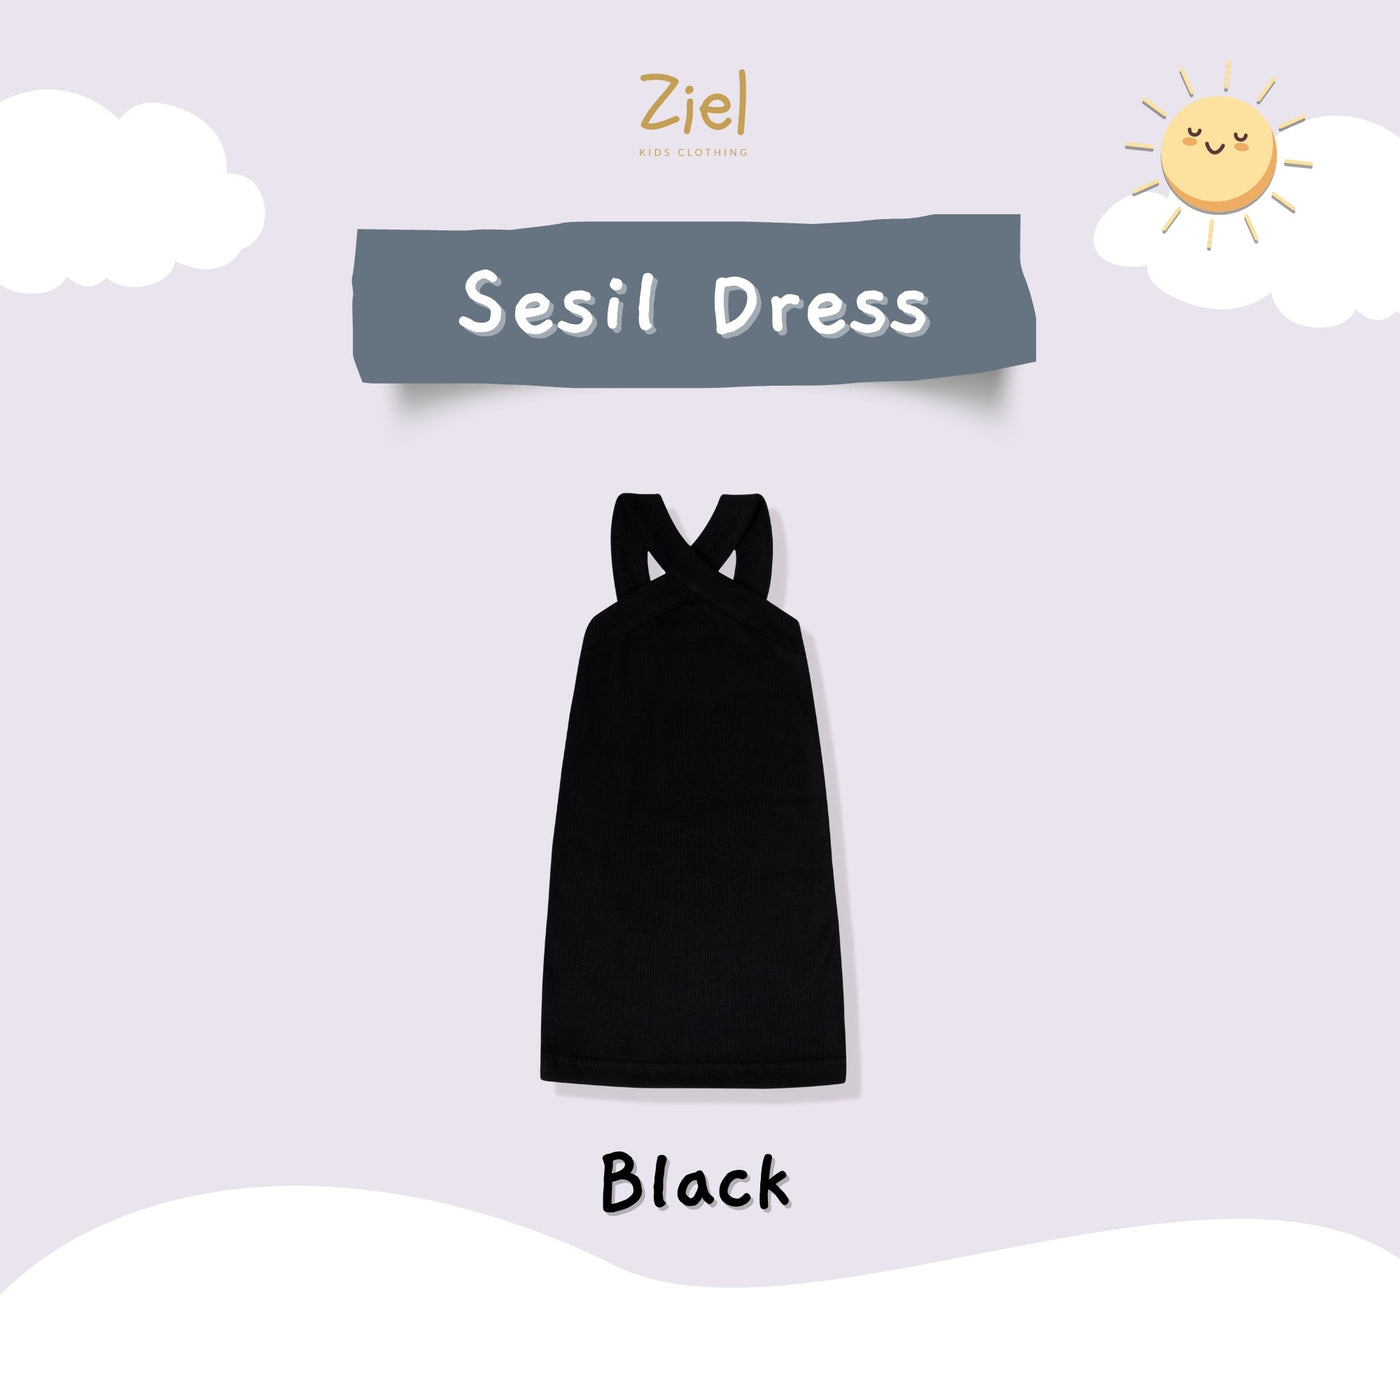 Sesil Dress